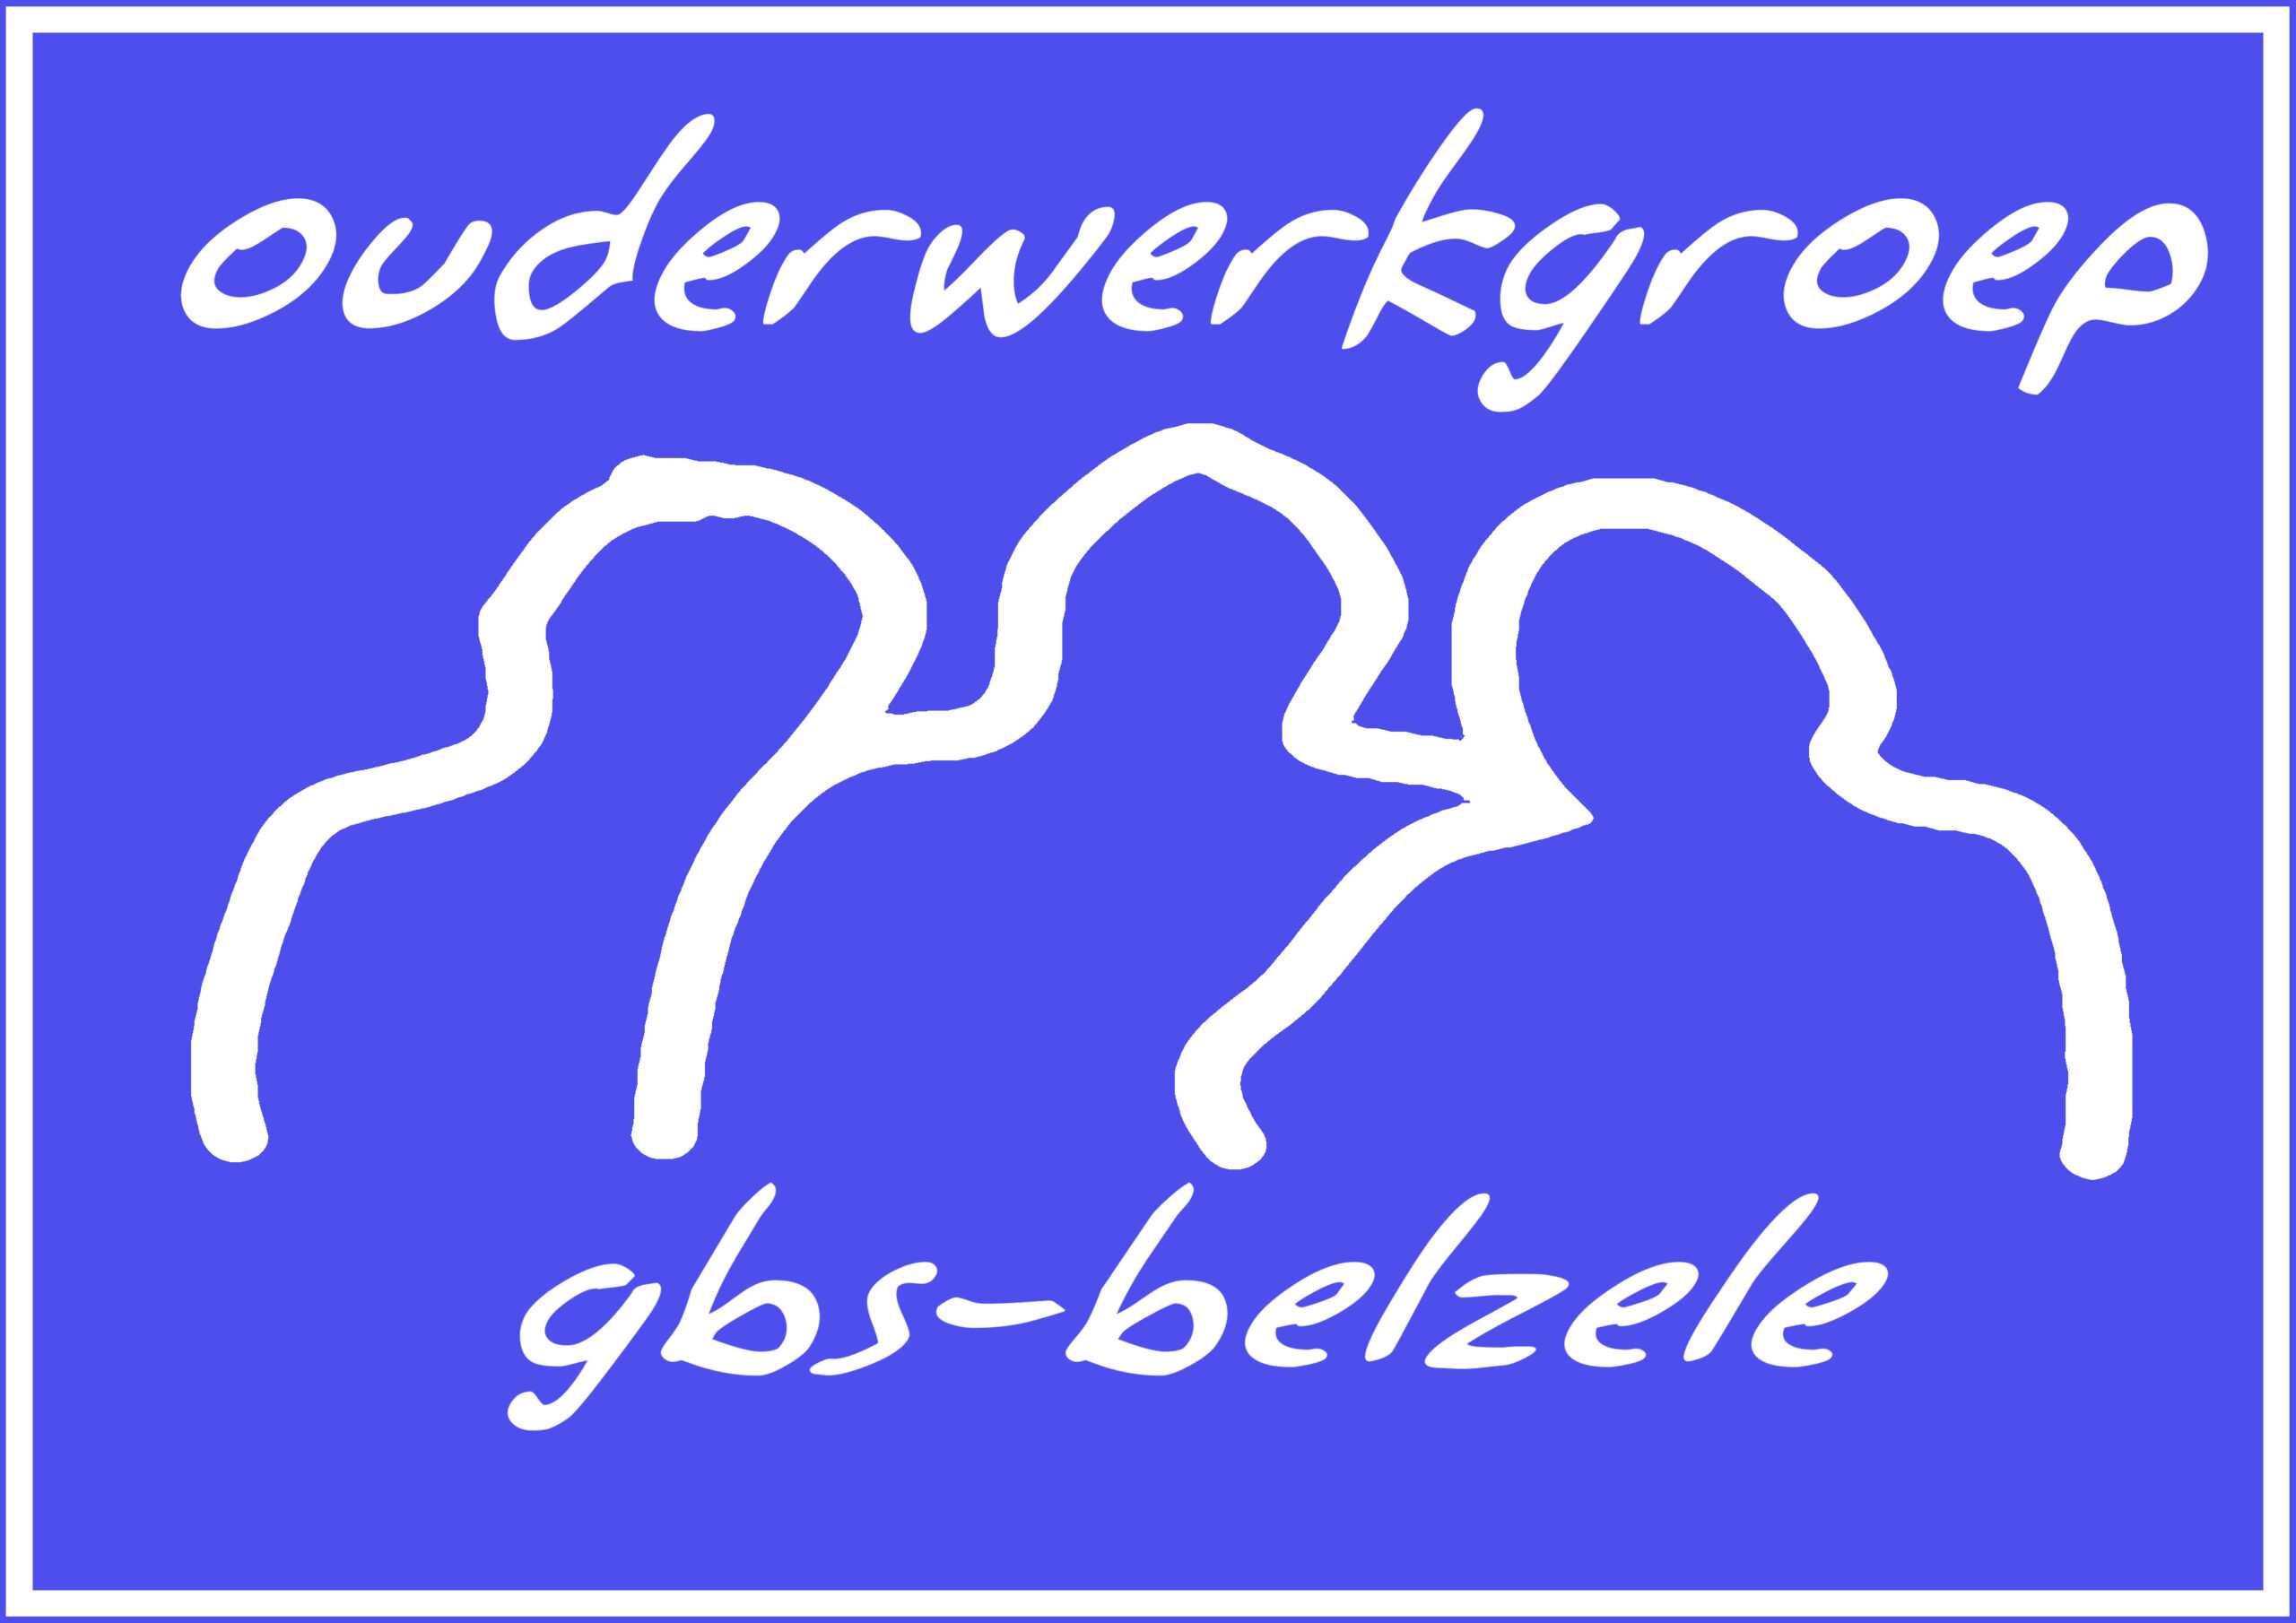 Ouderwerkgroep GBS Belzele